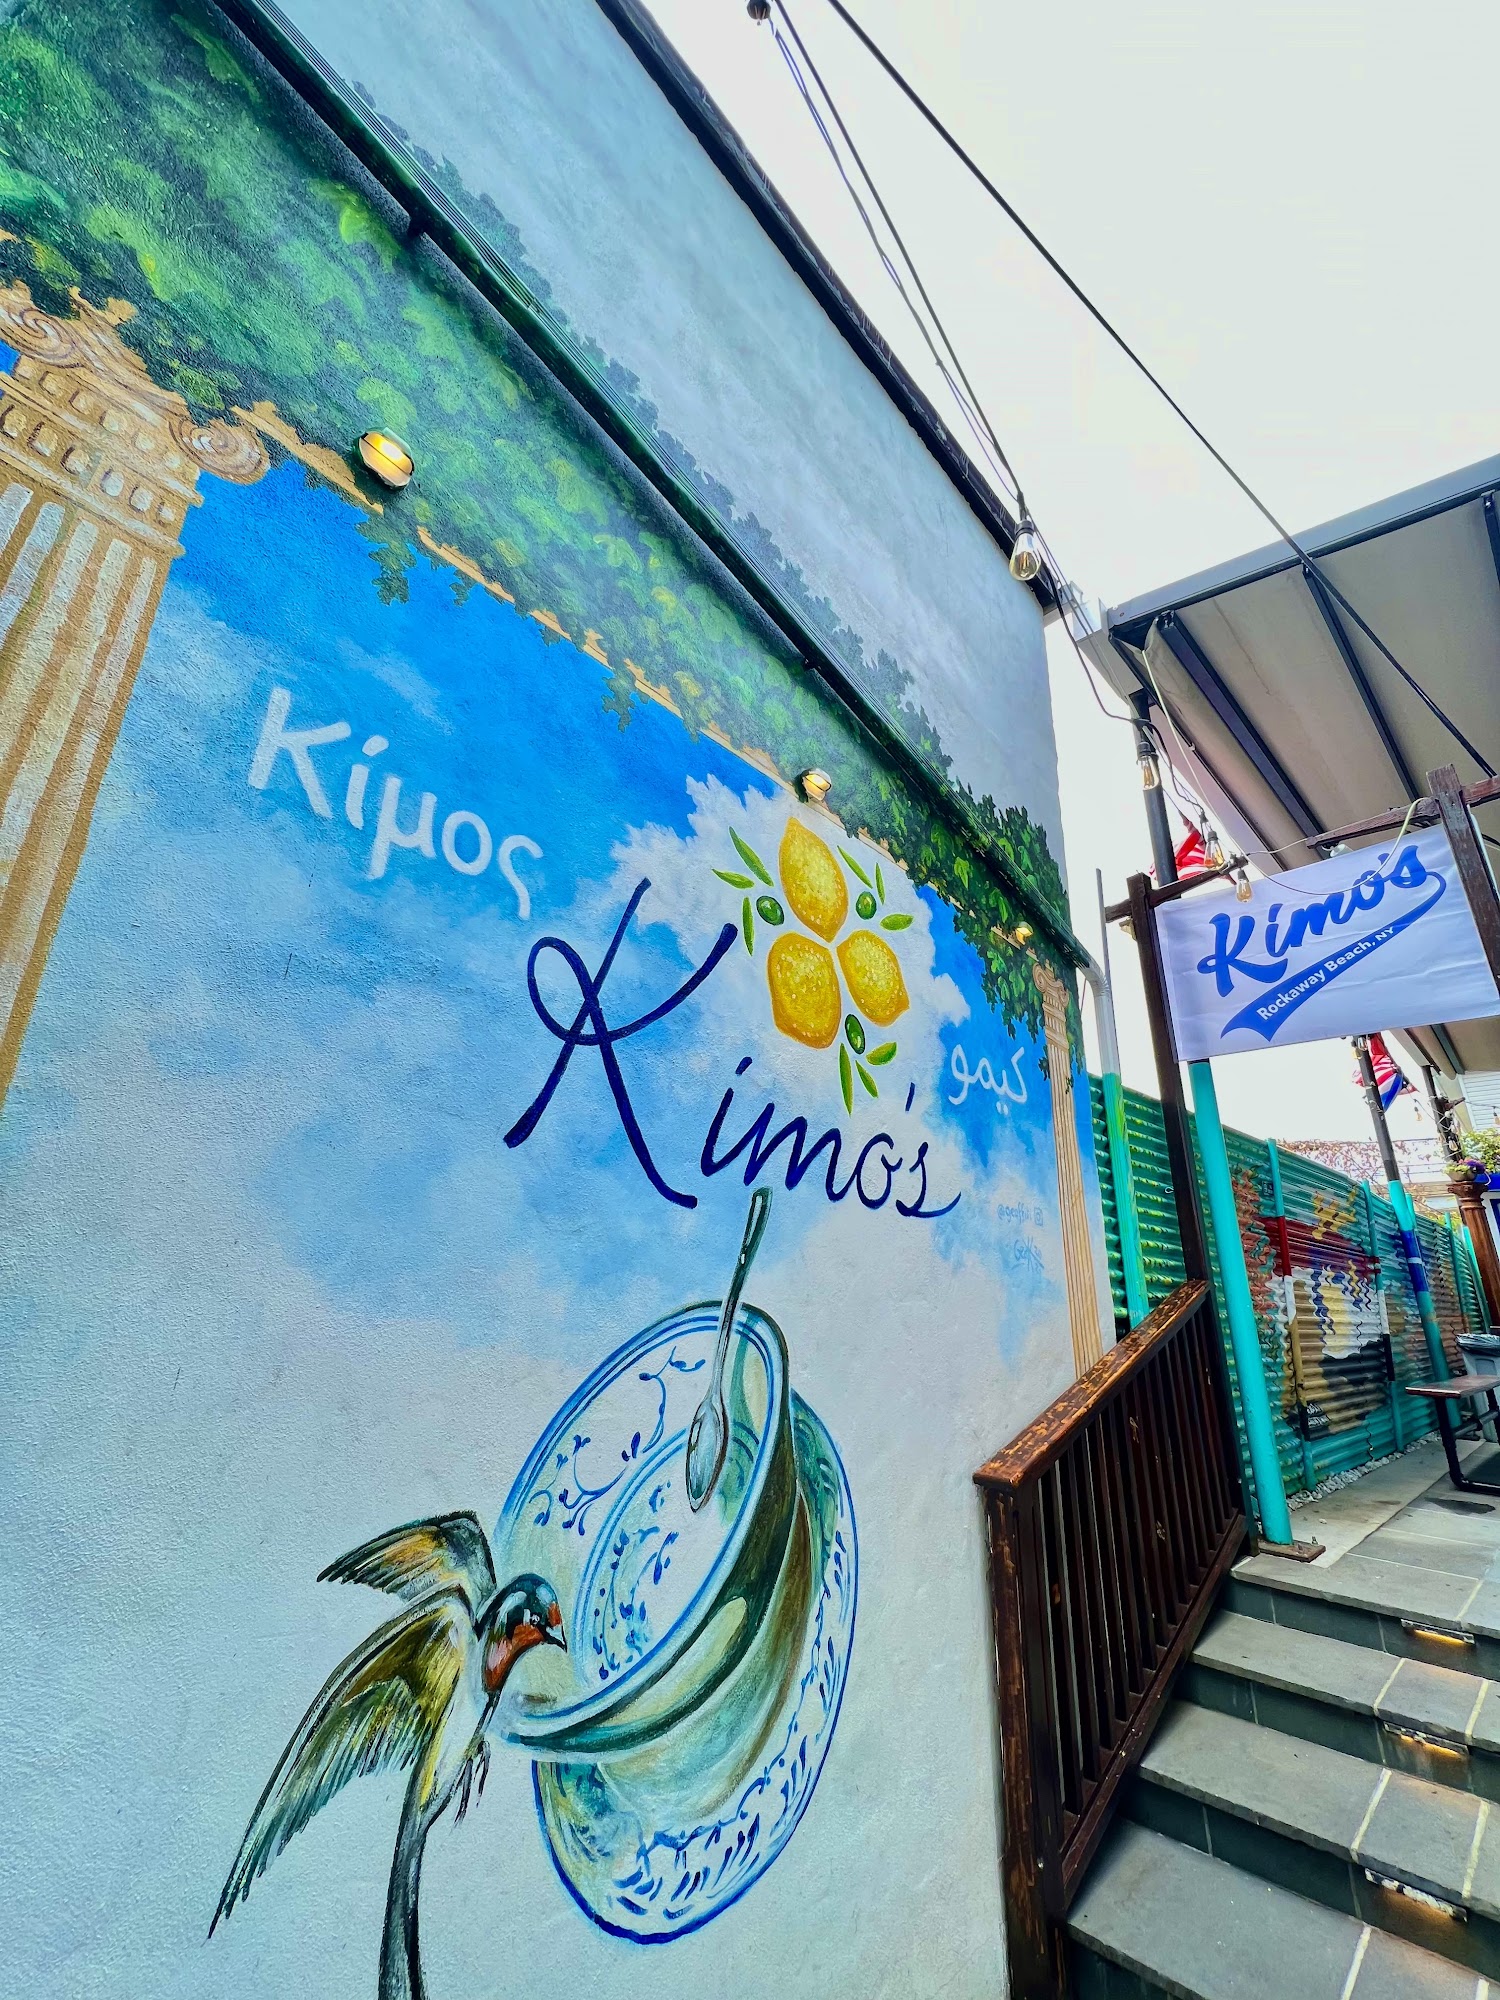 Kimo's